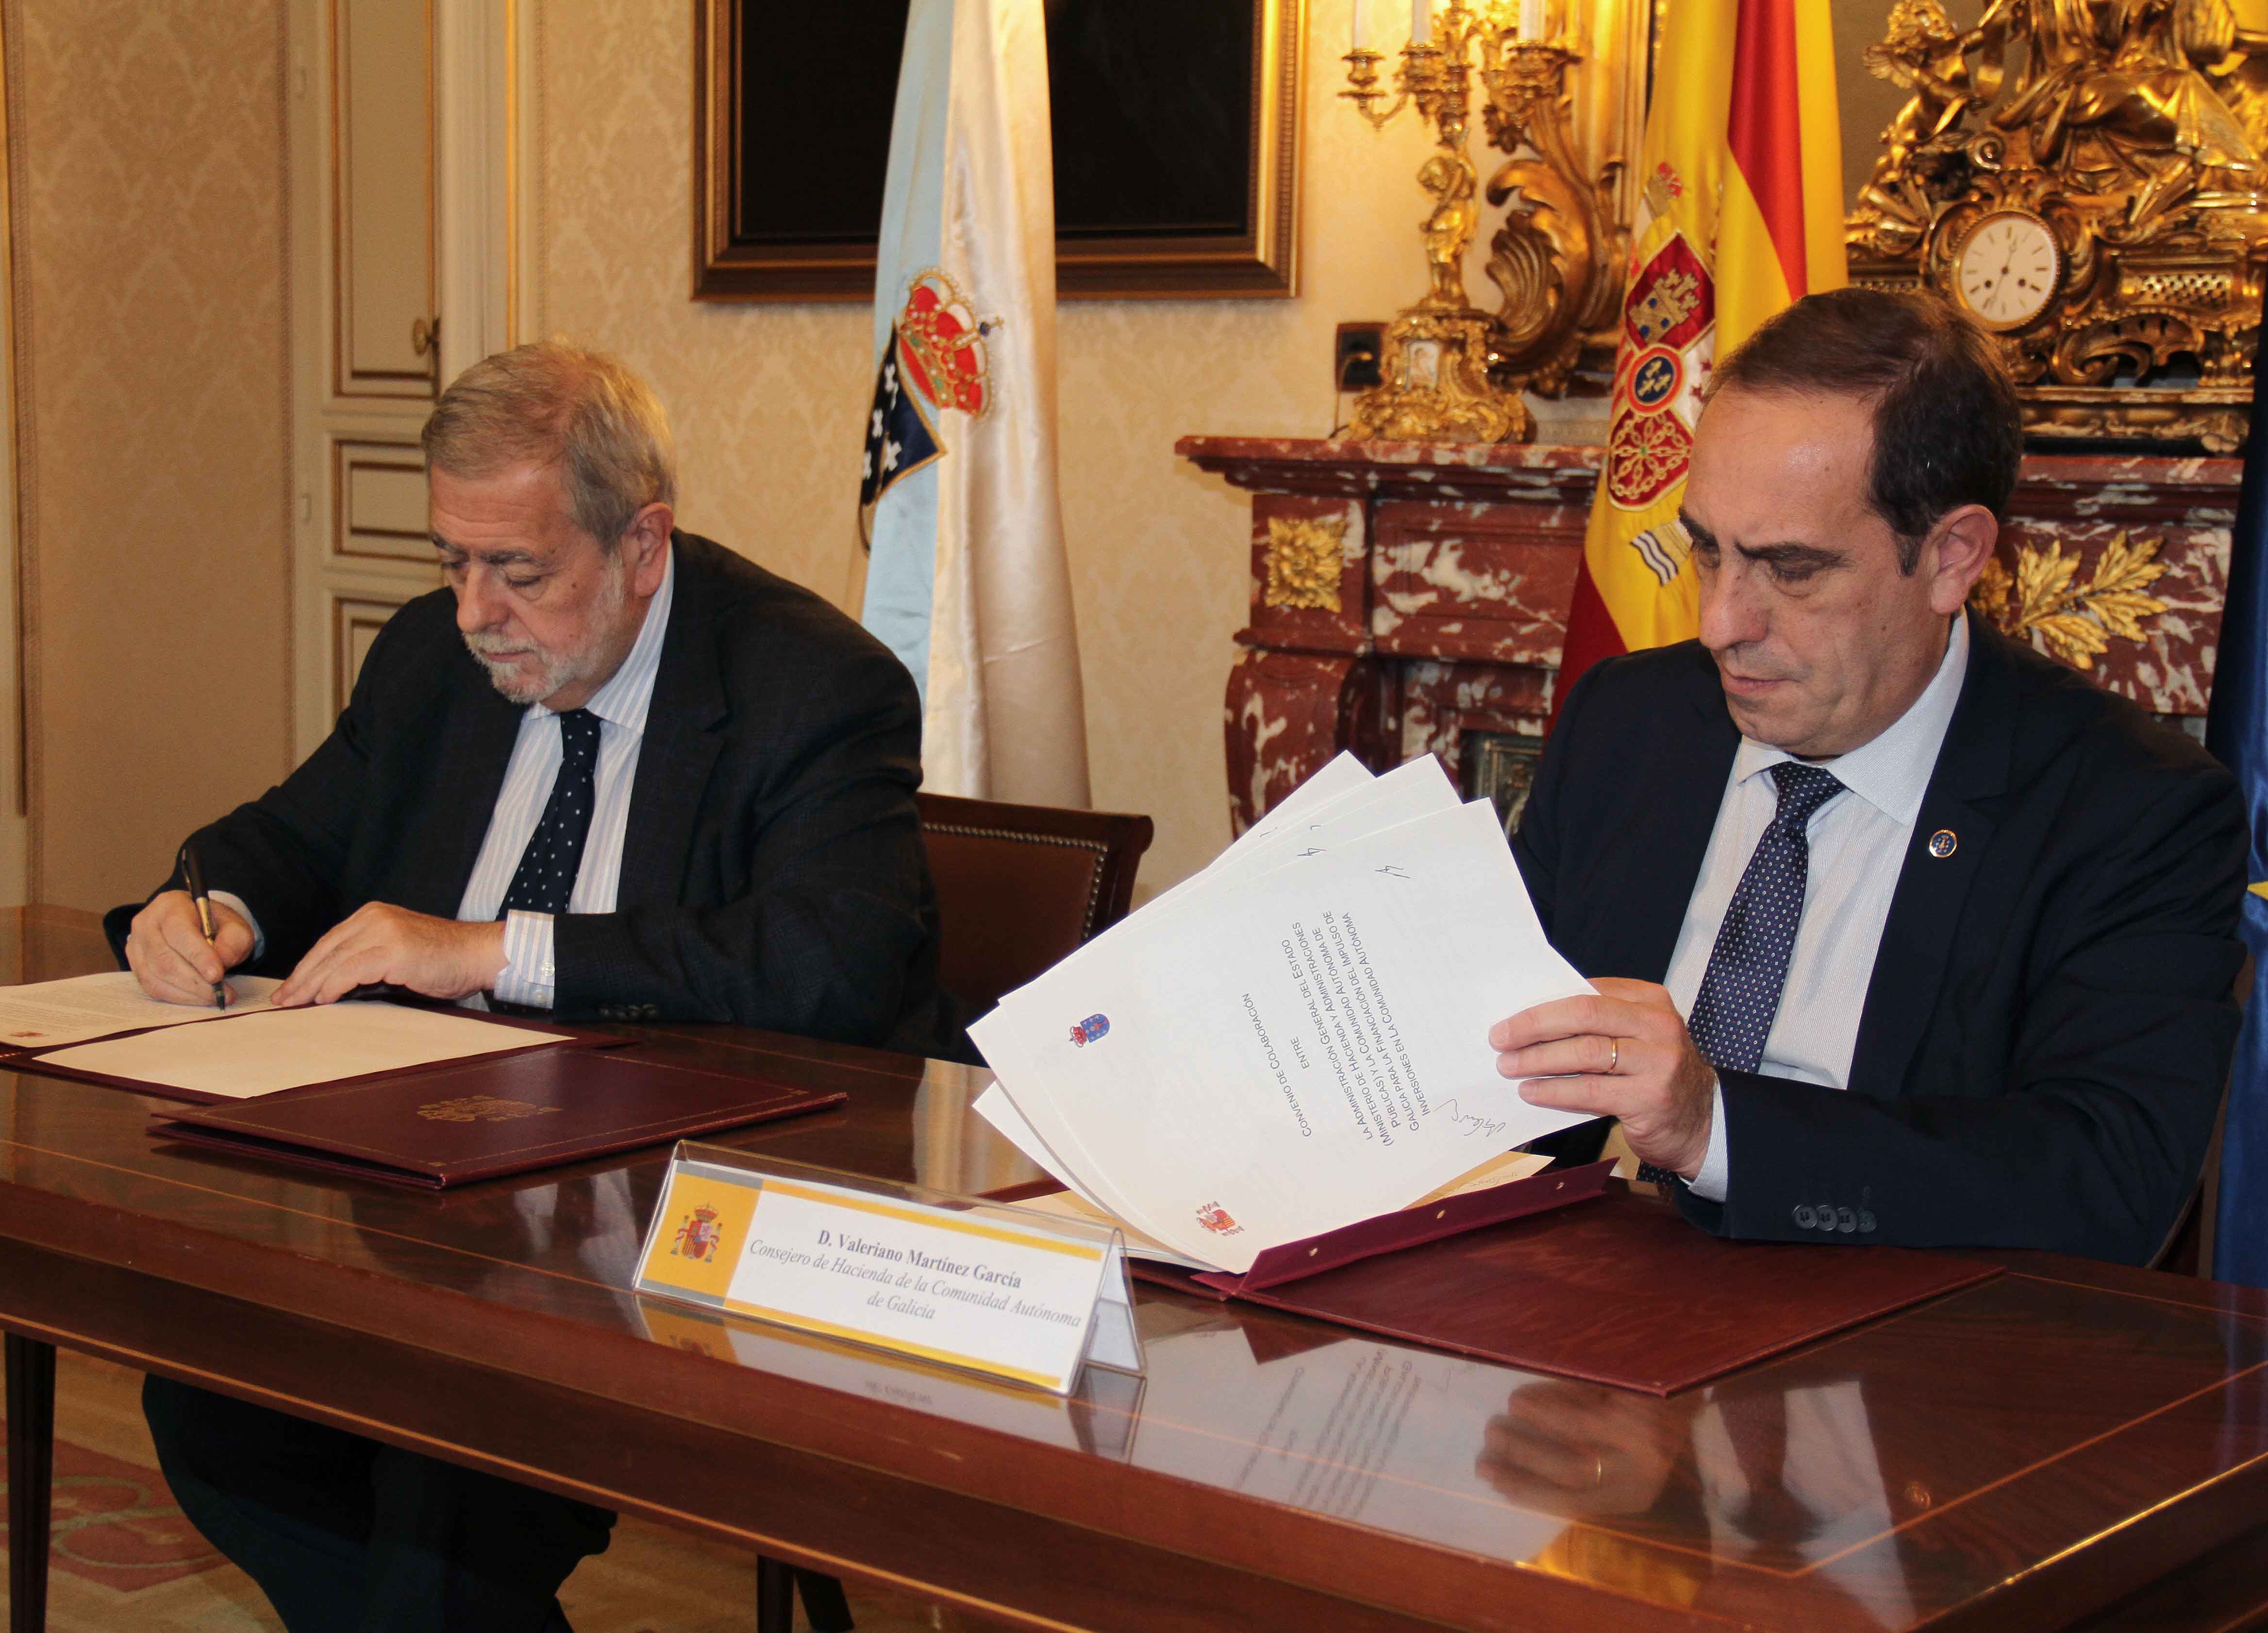 Galicia percibirá 85 millones de euros adicionales para inversiones gracias al cumplimiento del déficit